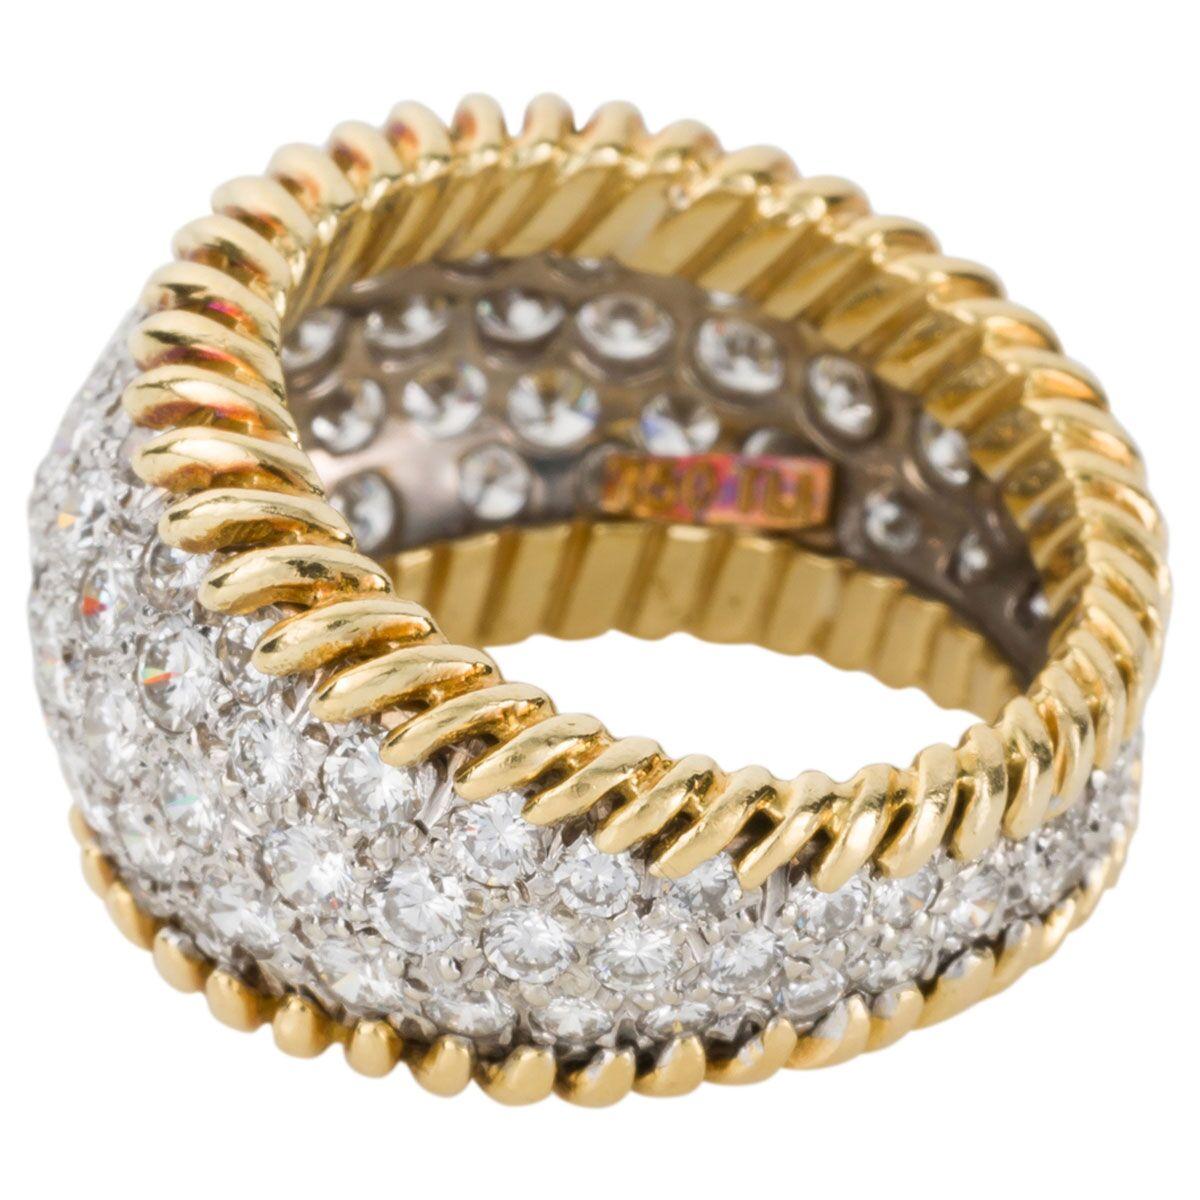 Retro 3.00 Carat Diamond Pave Set & 18 Karat Yellow Gold Ring - Ring Size 5.5